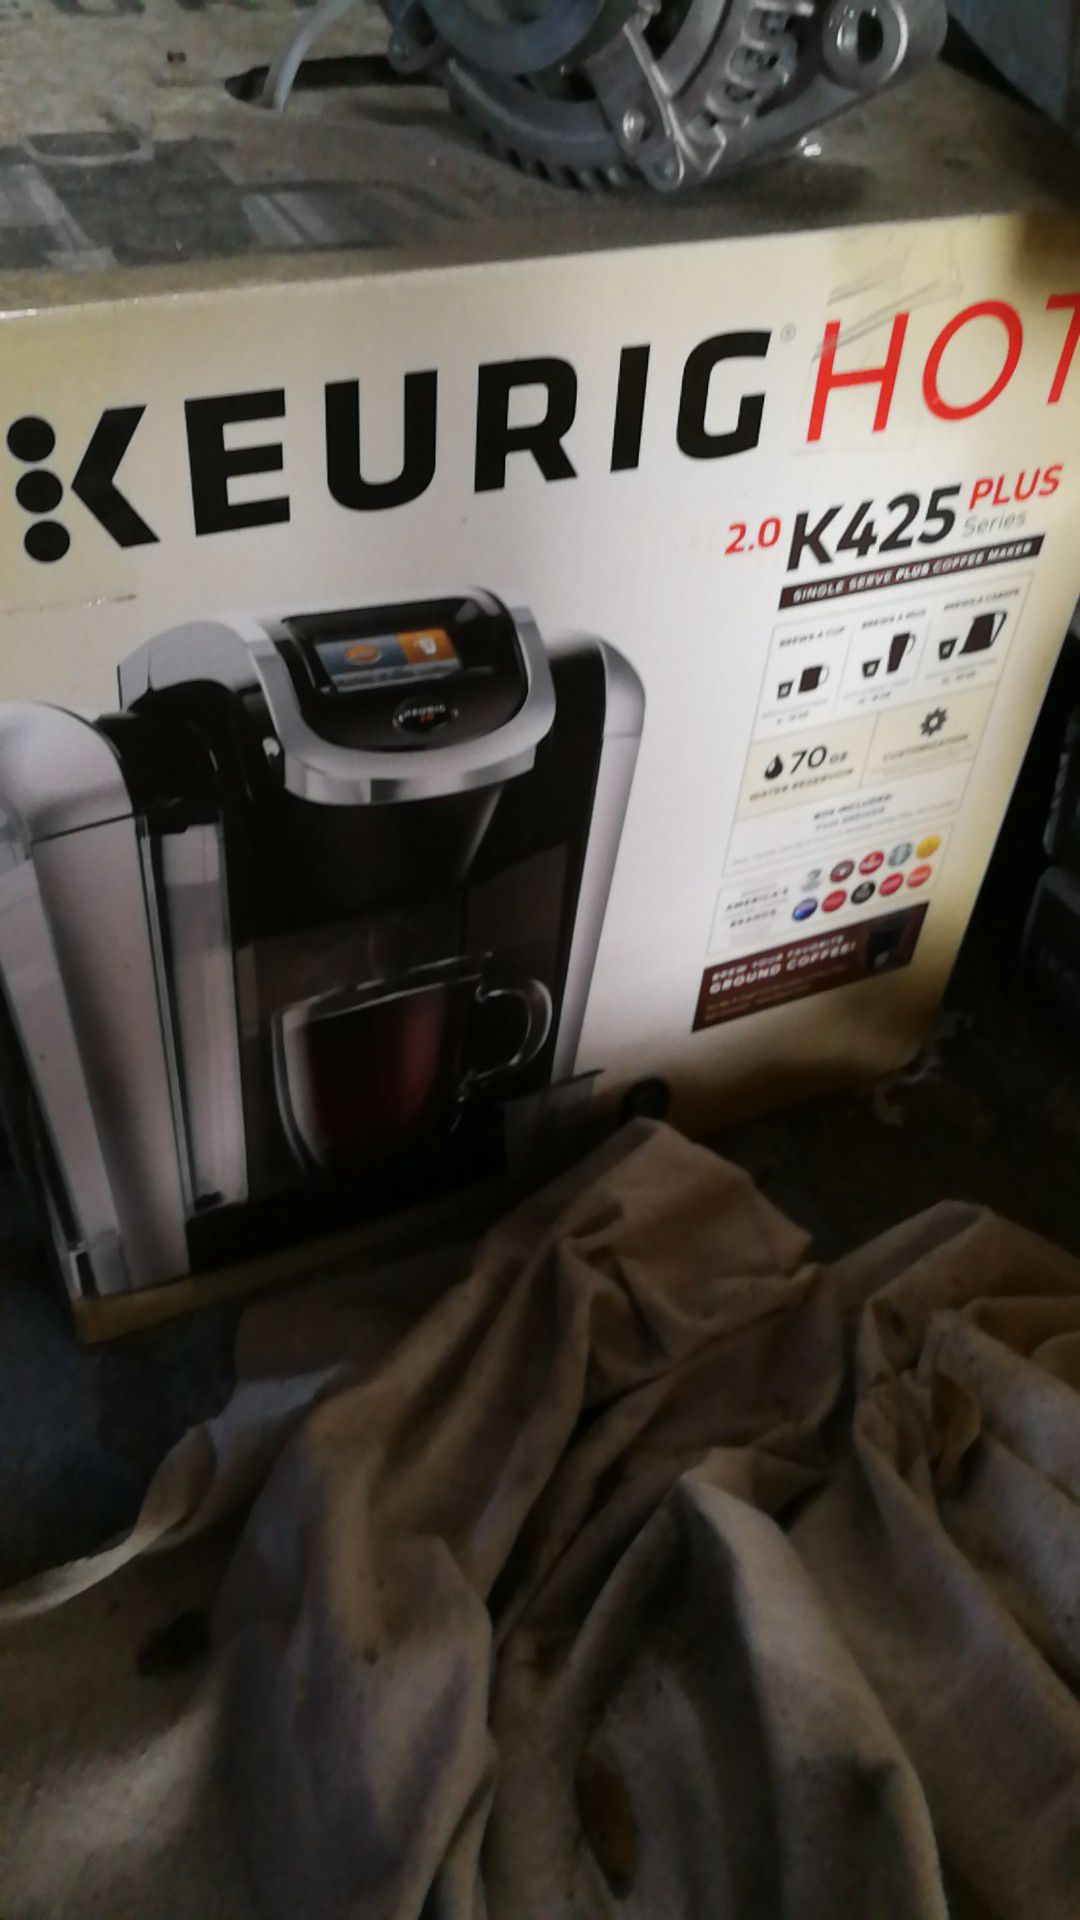 Keurig hot k425 plus coffee maker